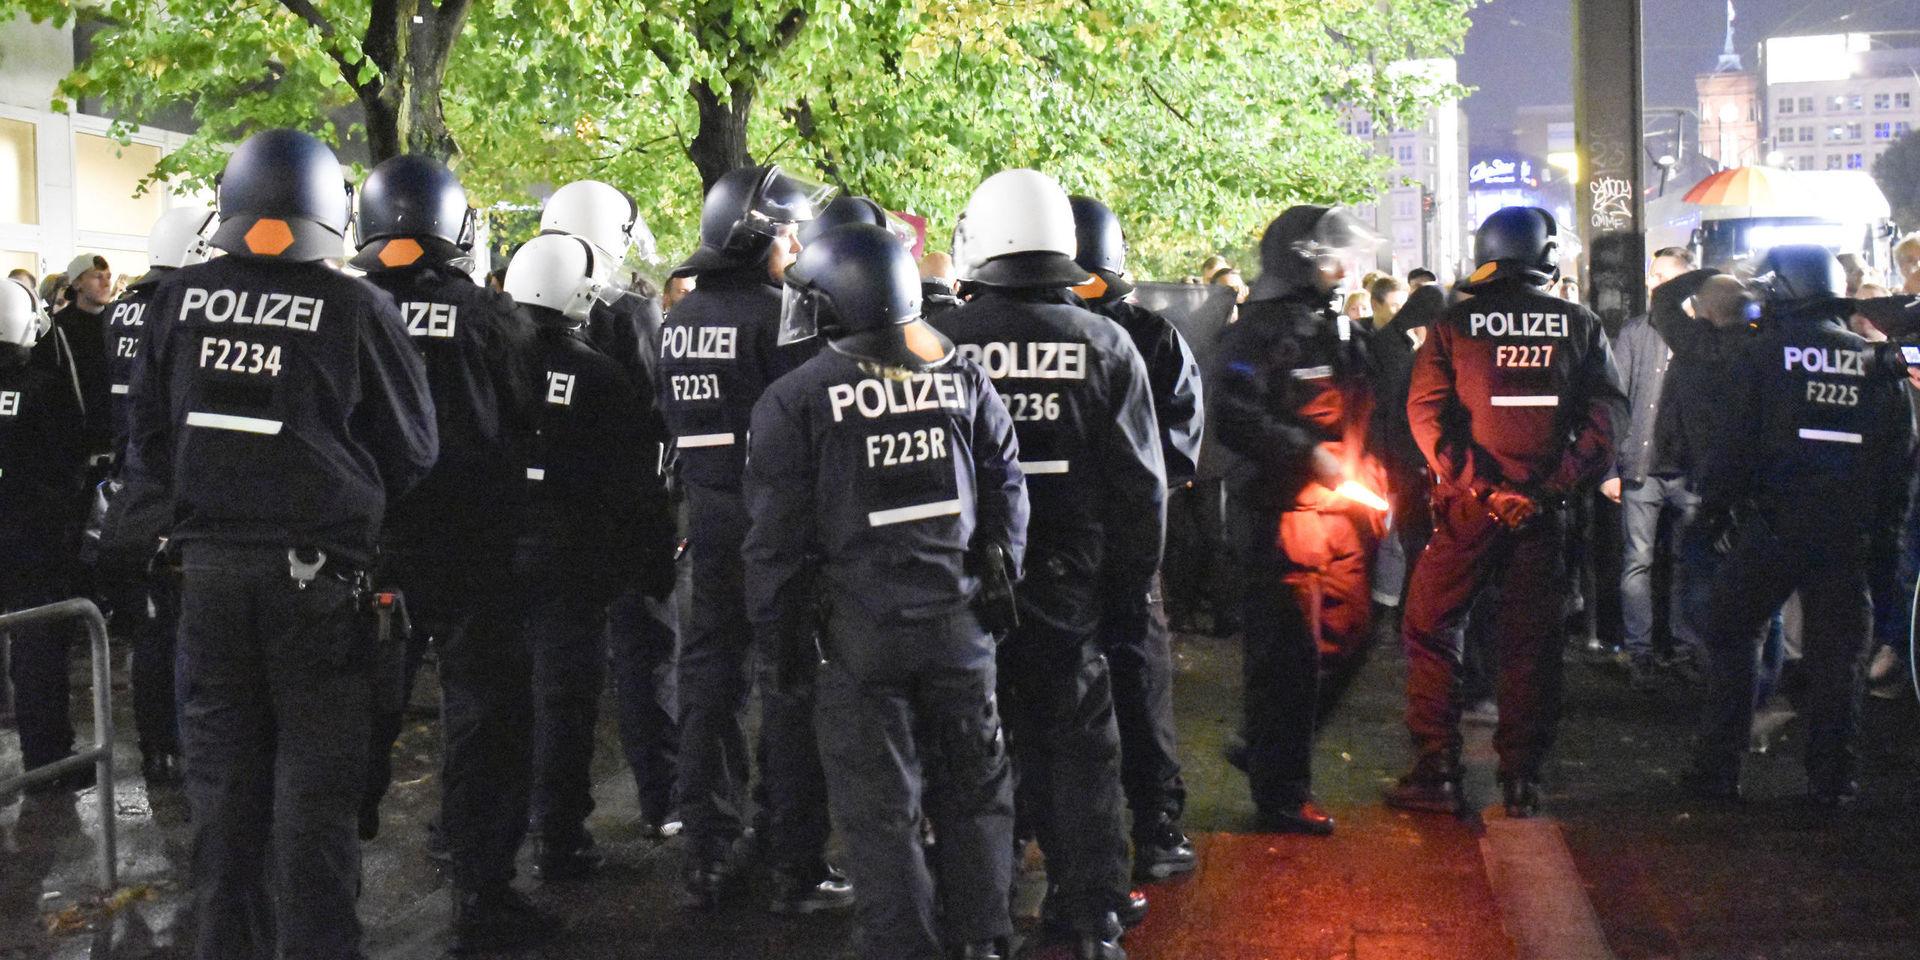 En falsk kvinnlig polis ska ha deltagit i polisinsatser i Berlin. Arkivbild